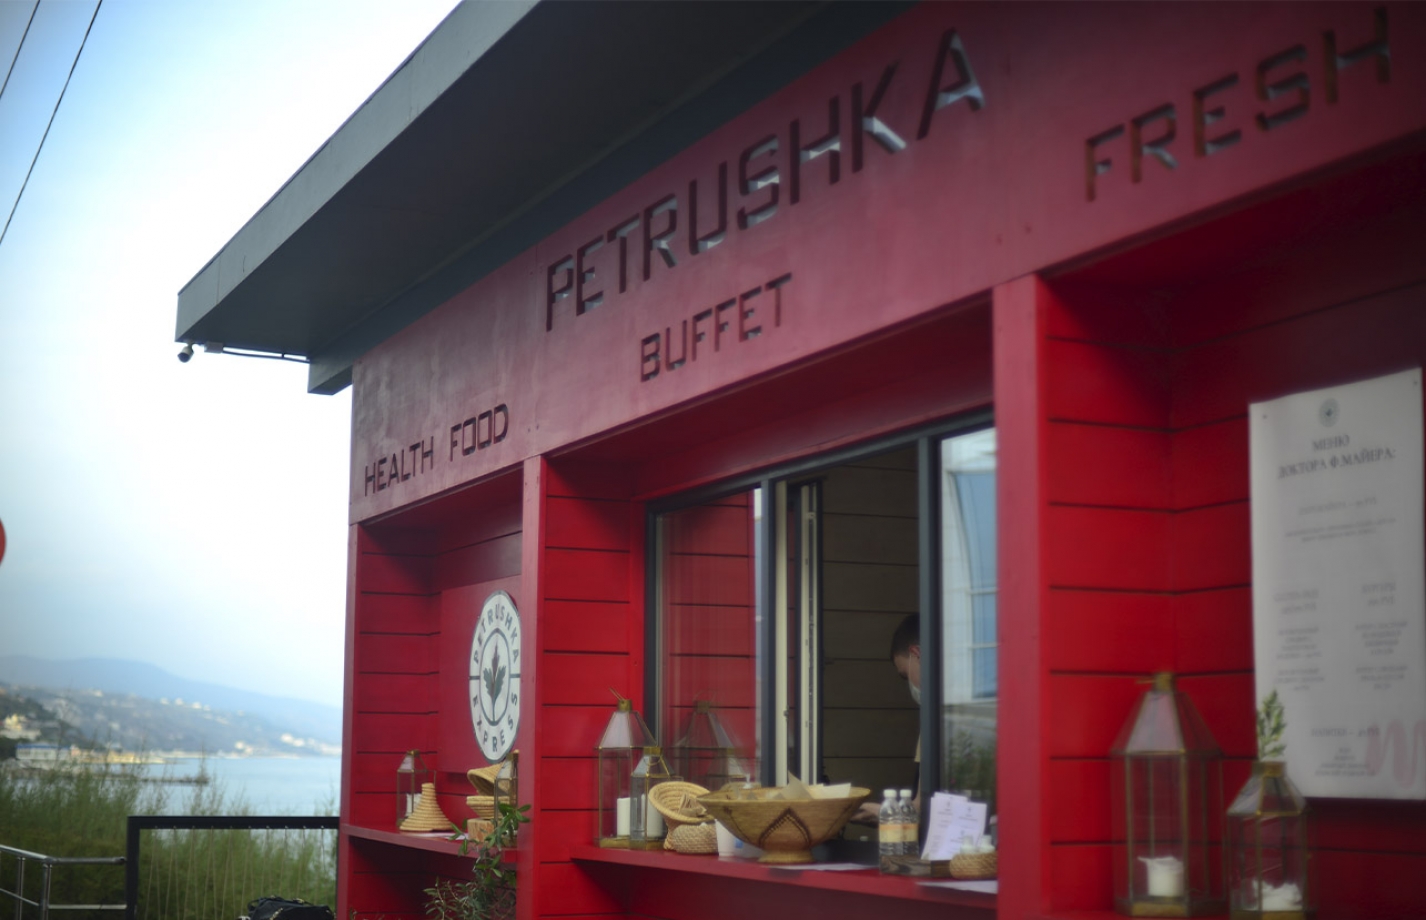 Кафе Петрушка в гостинице Море Спа Резорт знаменито домашней едой и глинтвейном